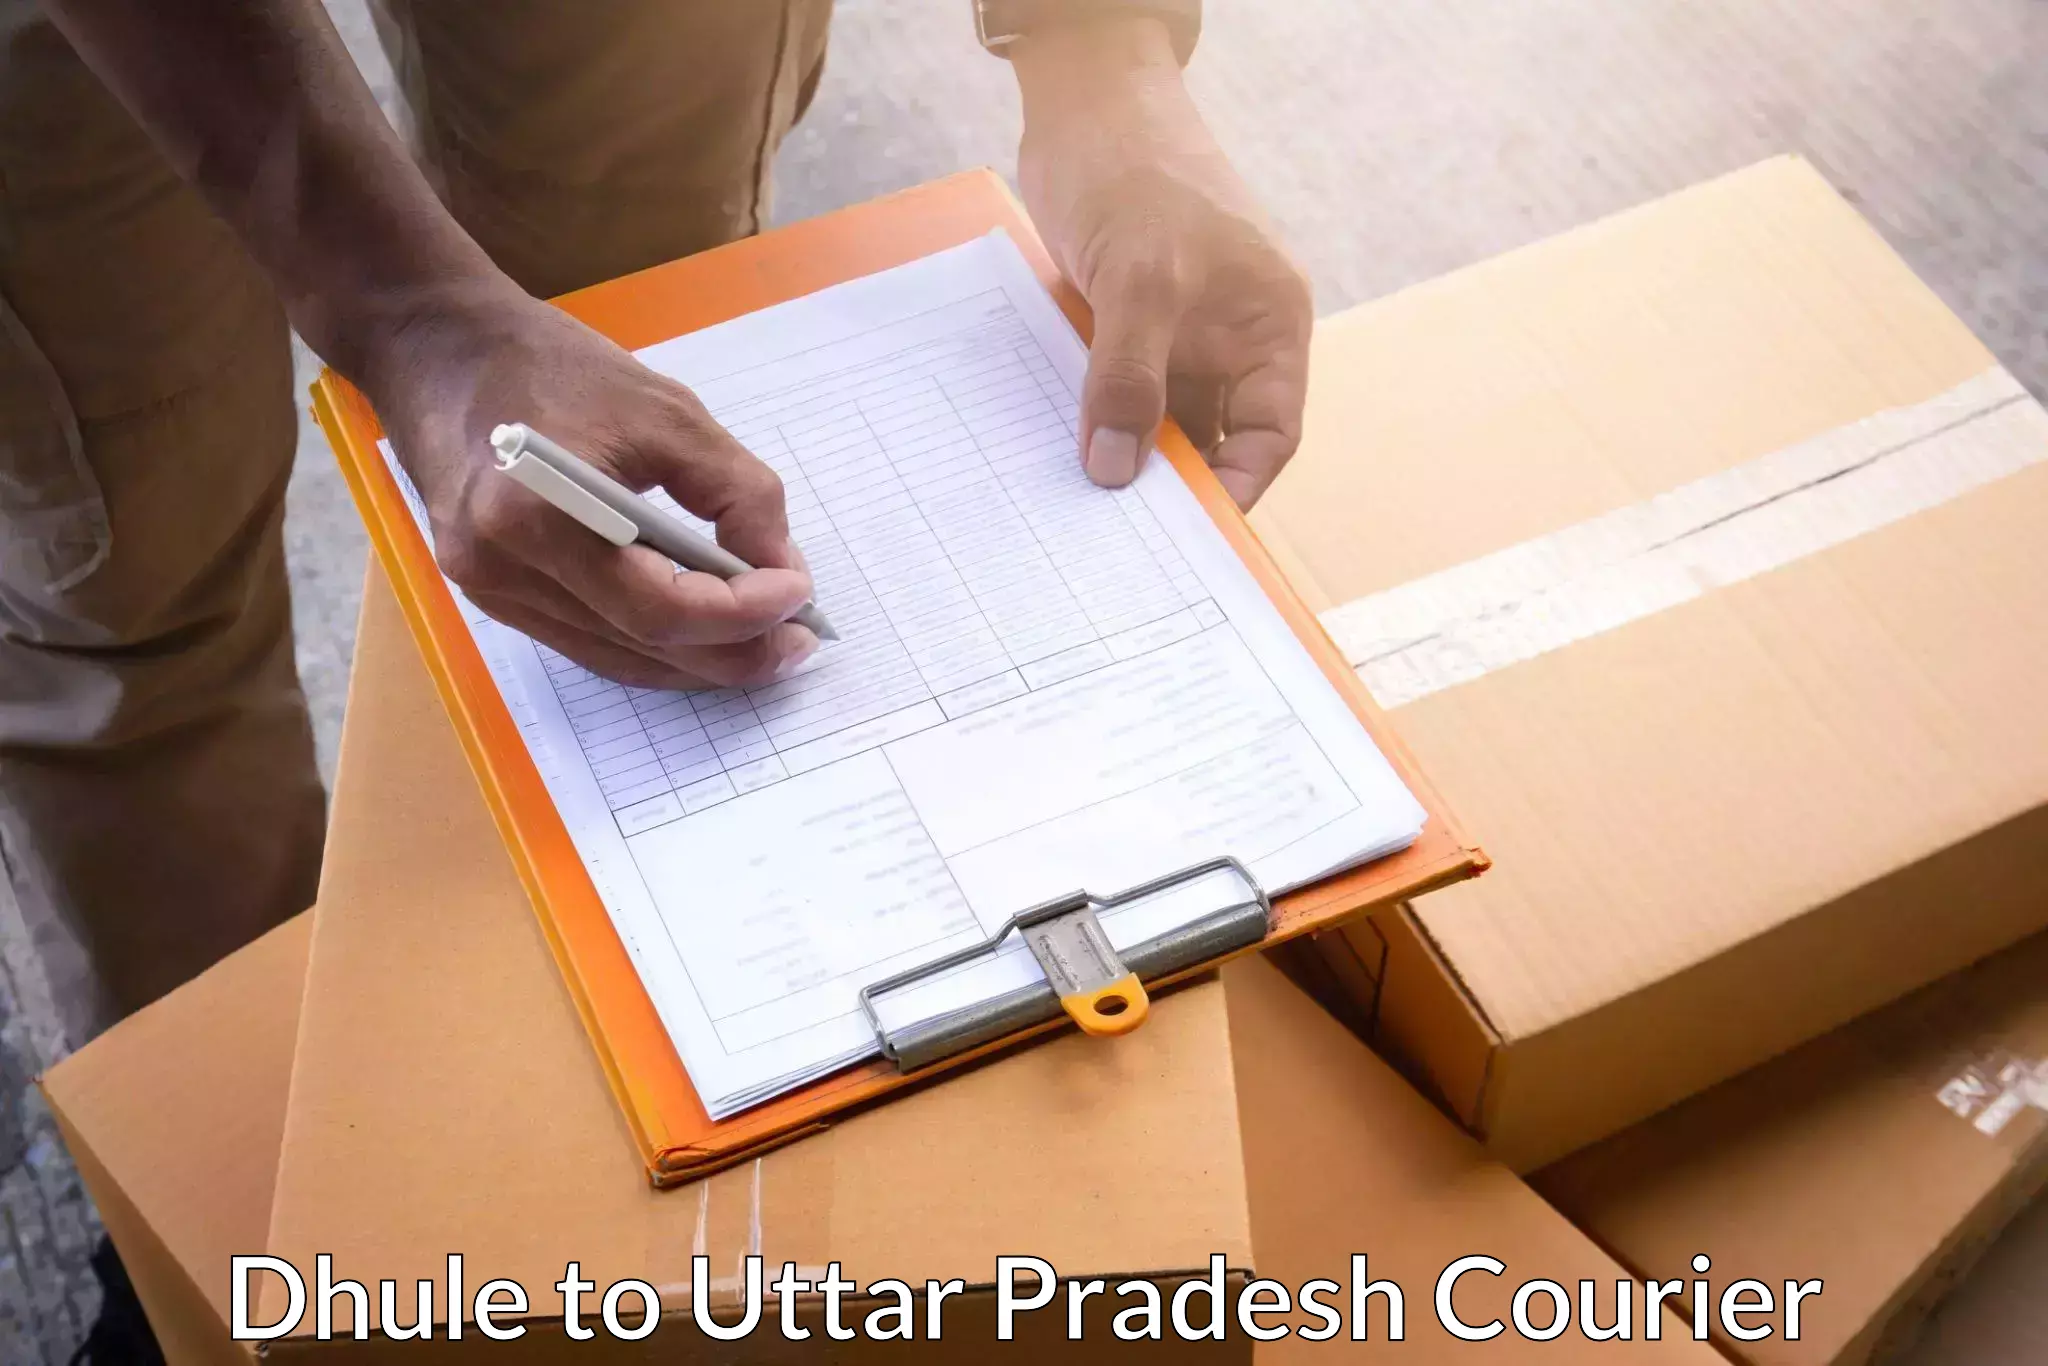 Cargo courier service Dhule to Nizamabad Azamgarh